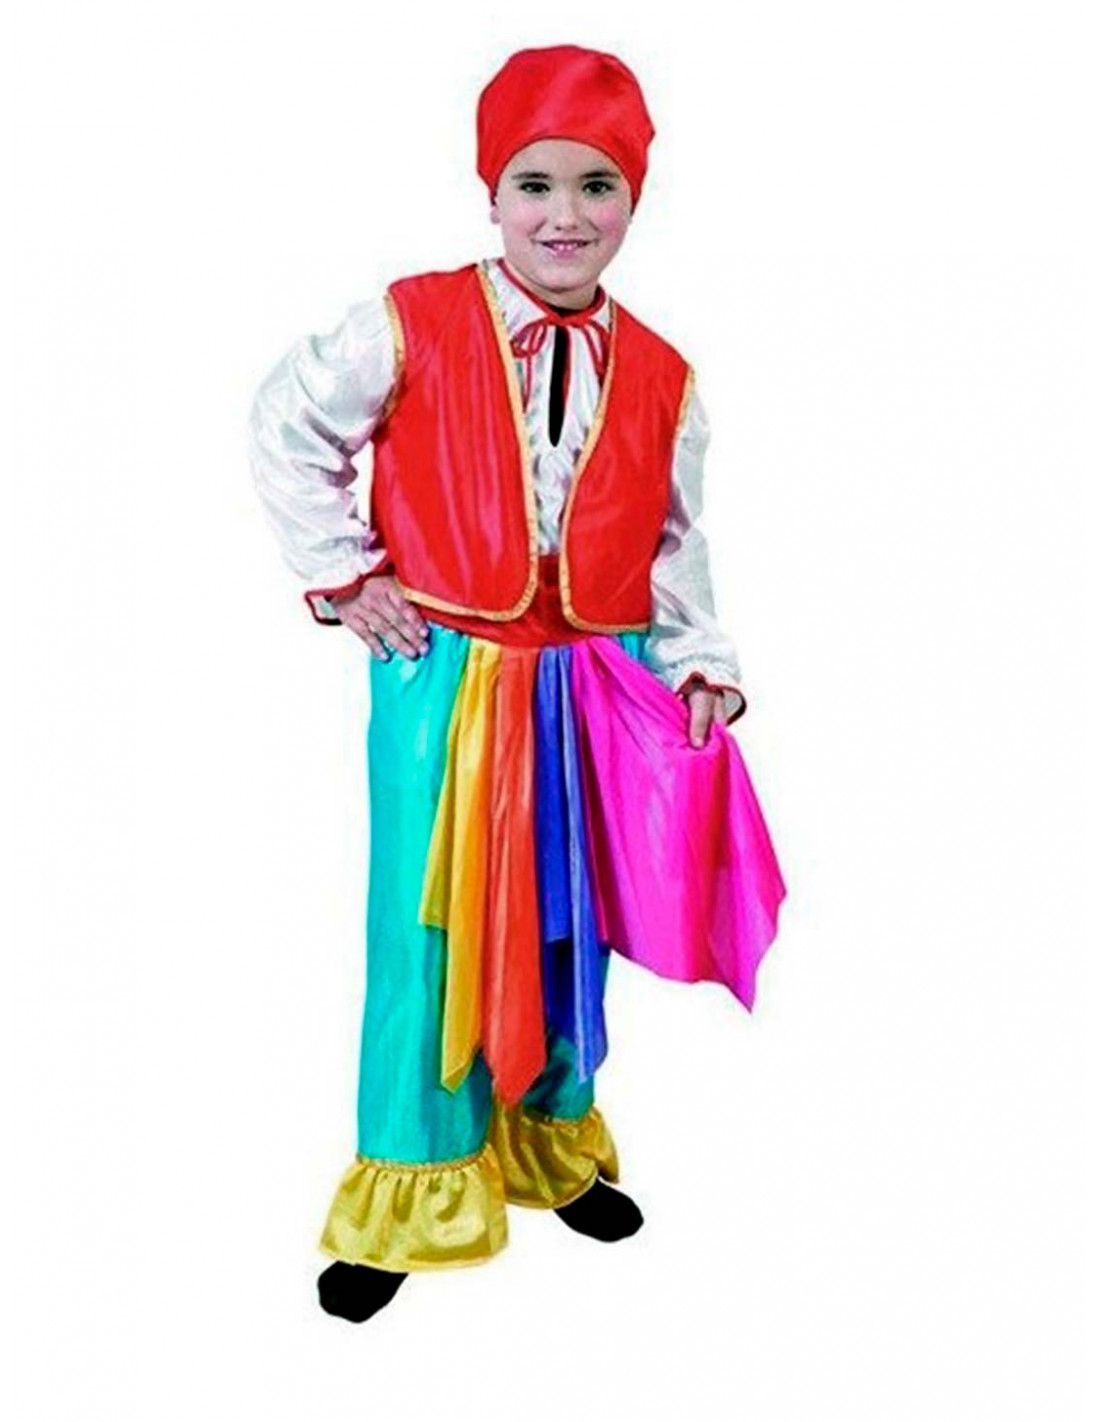 Comprar online Disfraz de Zíngara Pañuelo para niña